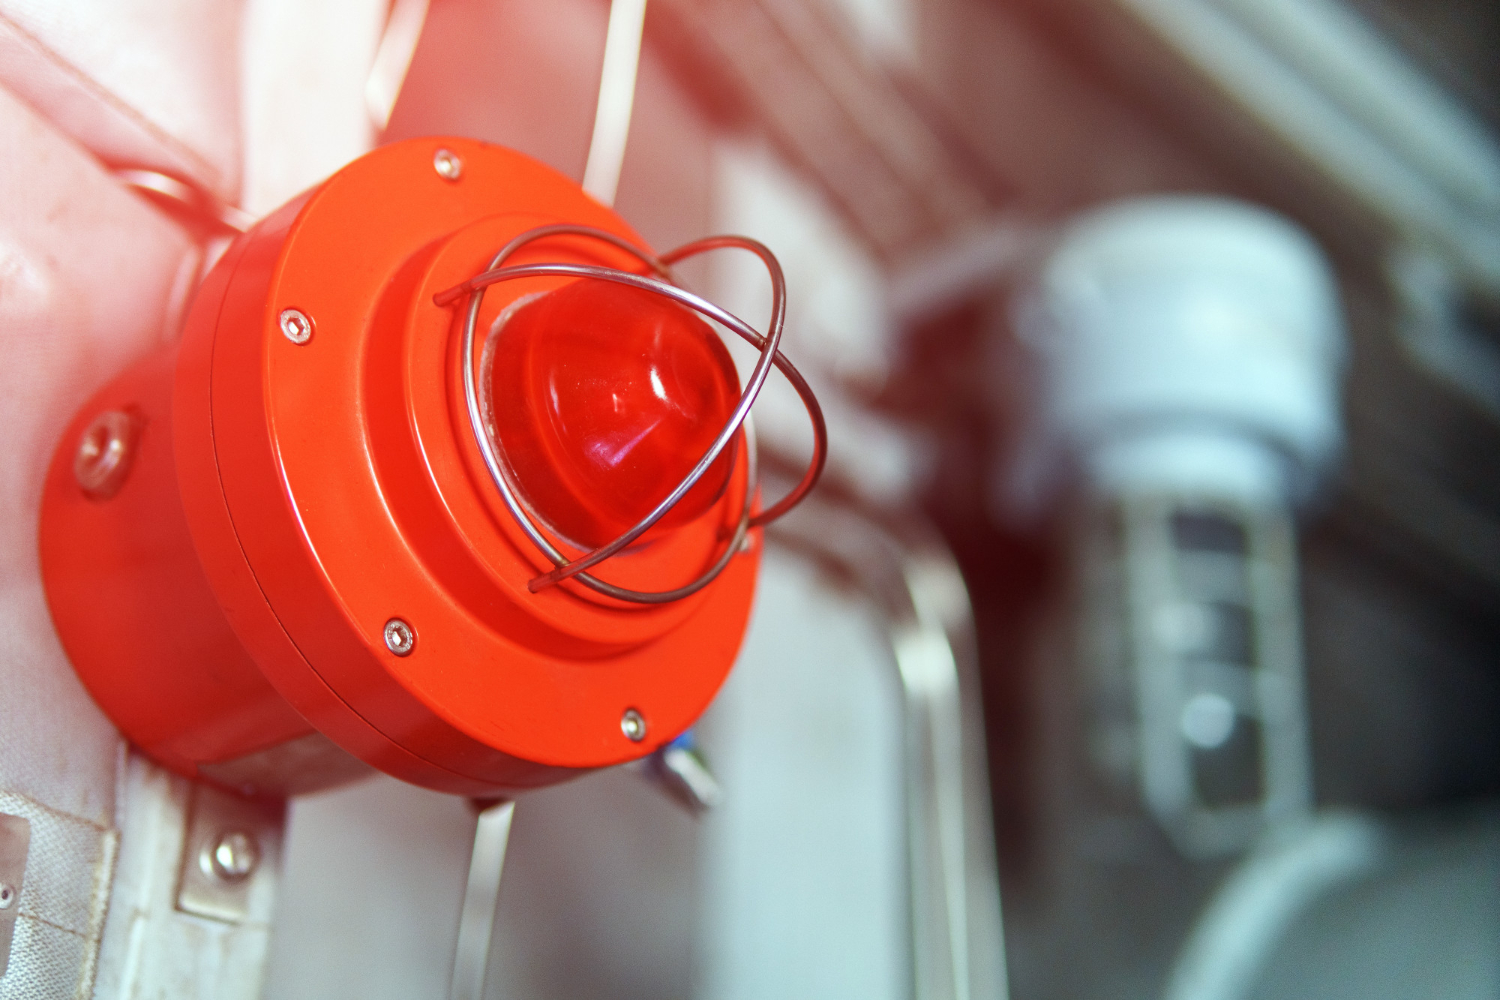 lampara-roja-alarma-contra-incendios-emergencia.jpg